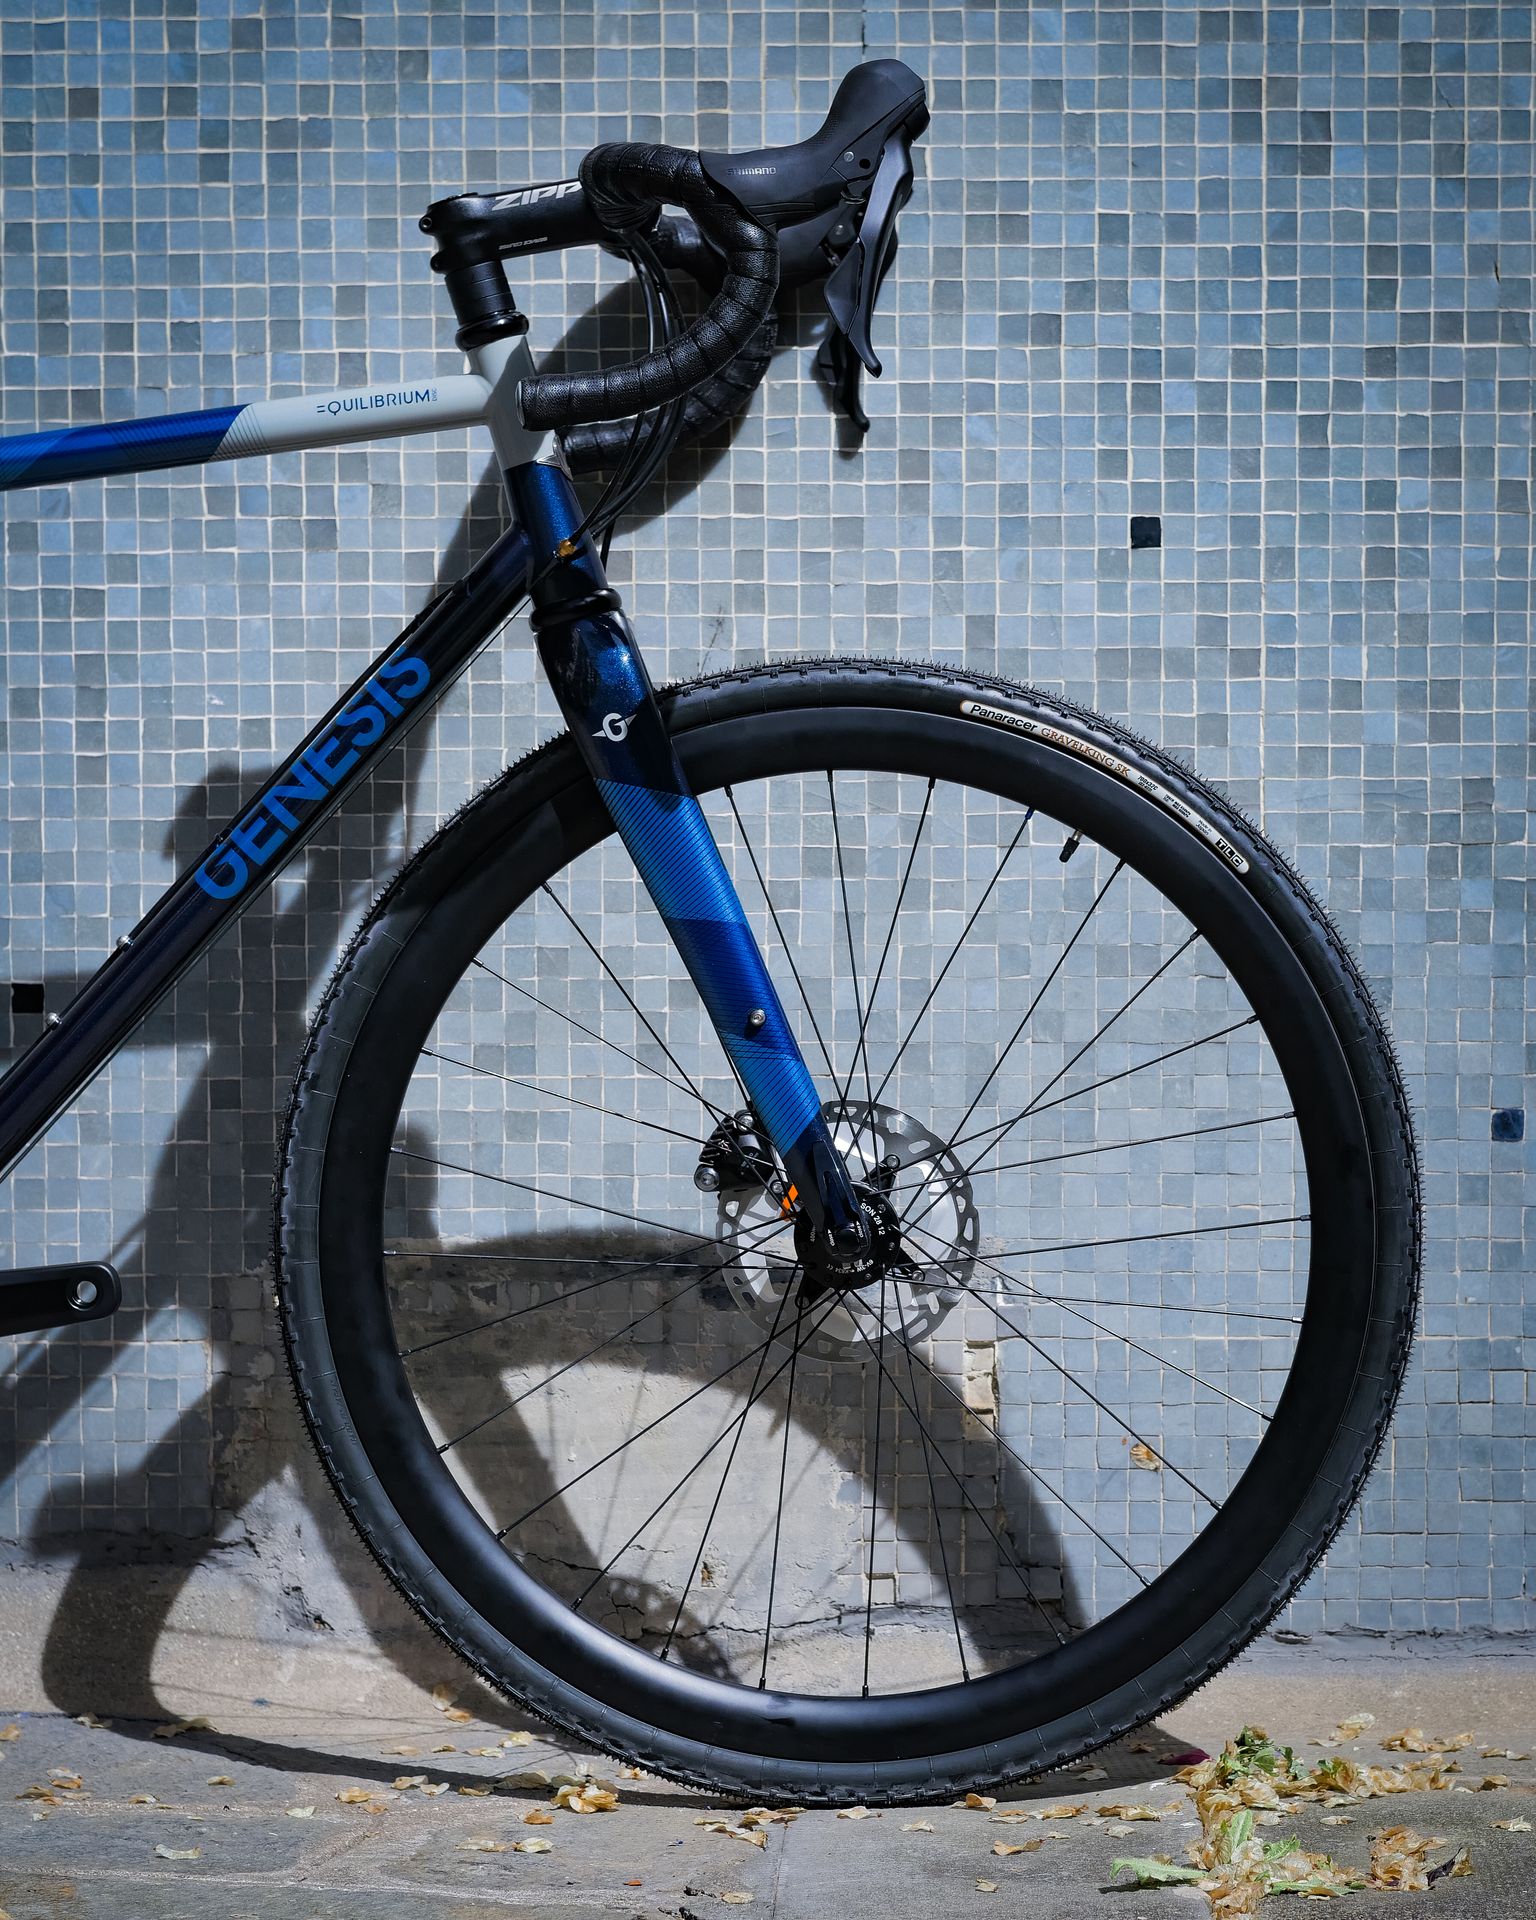 Magasin de cycles et atelier de réparation velo et montage vélo à la carte à Paris 13eme spécialisé dans le gravel et le voyage. cadre acier et fourche carbone + roue carbone rayonnée au magasin